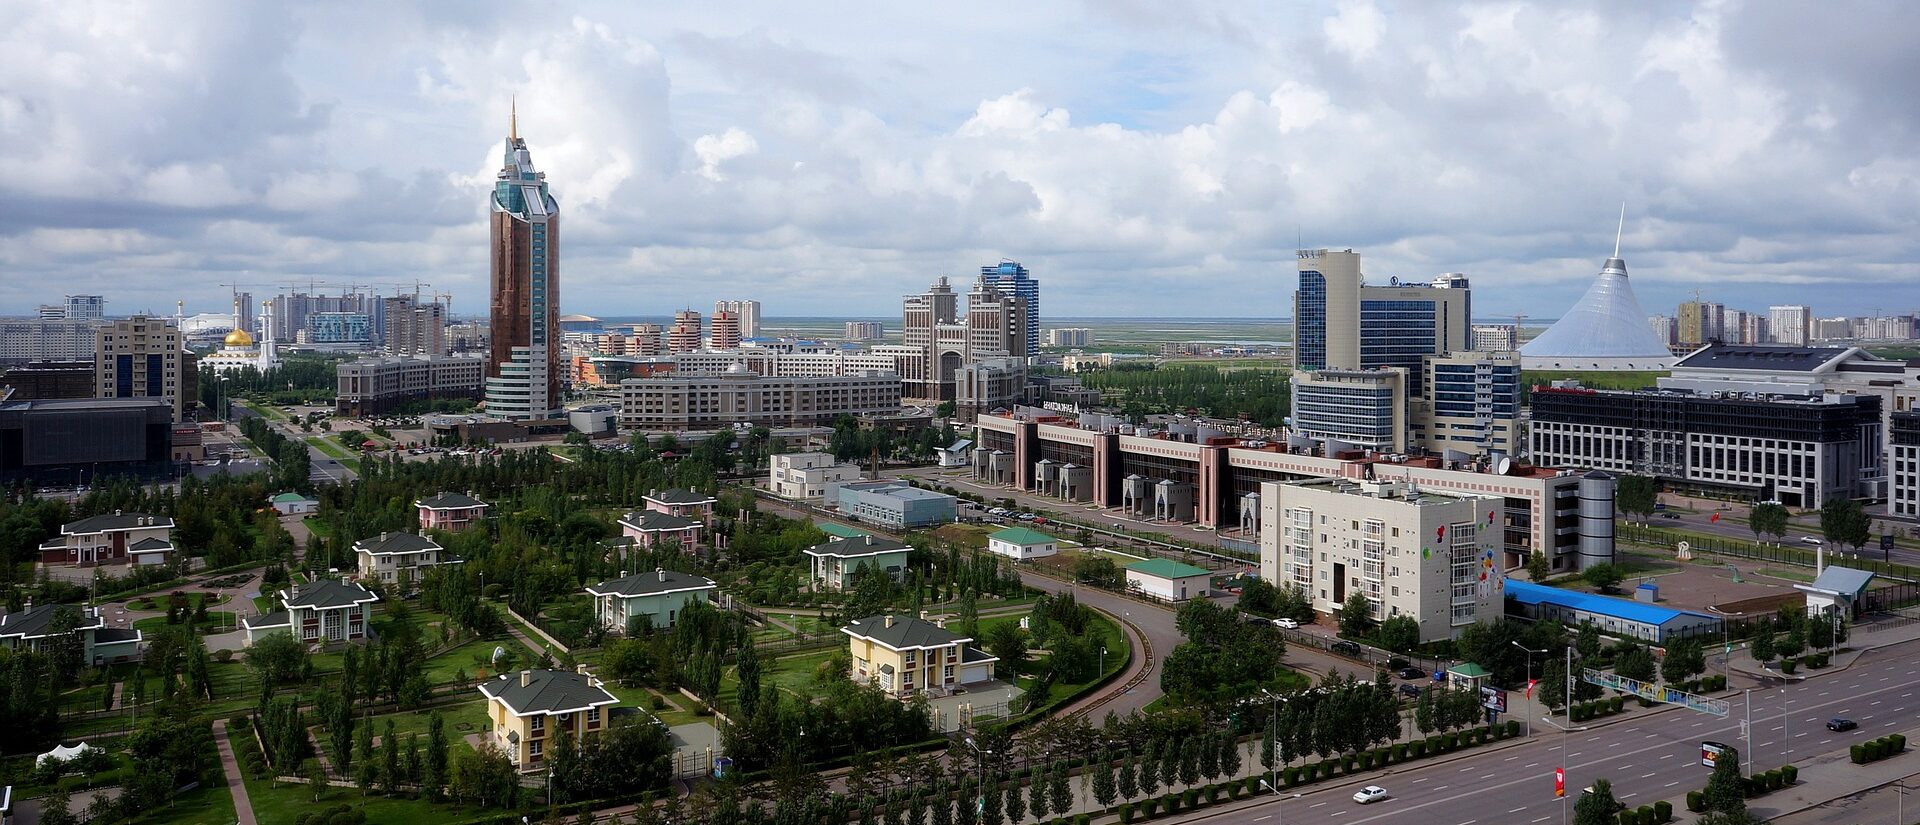 Nour-Soultan, la capitale du Kazakhstan, accueillera le pape François du 13 au 15 septembre 2022 | © Andy Bay/Pixabay